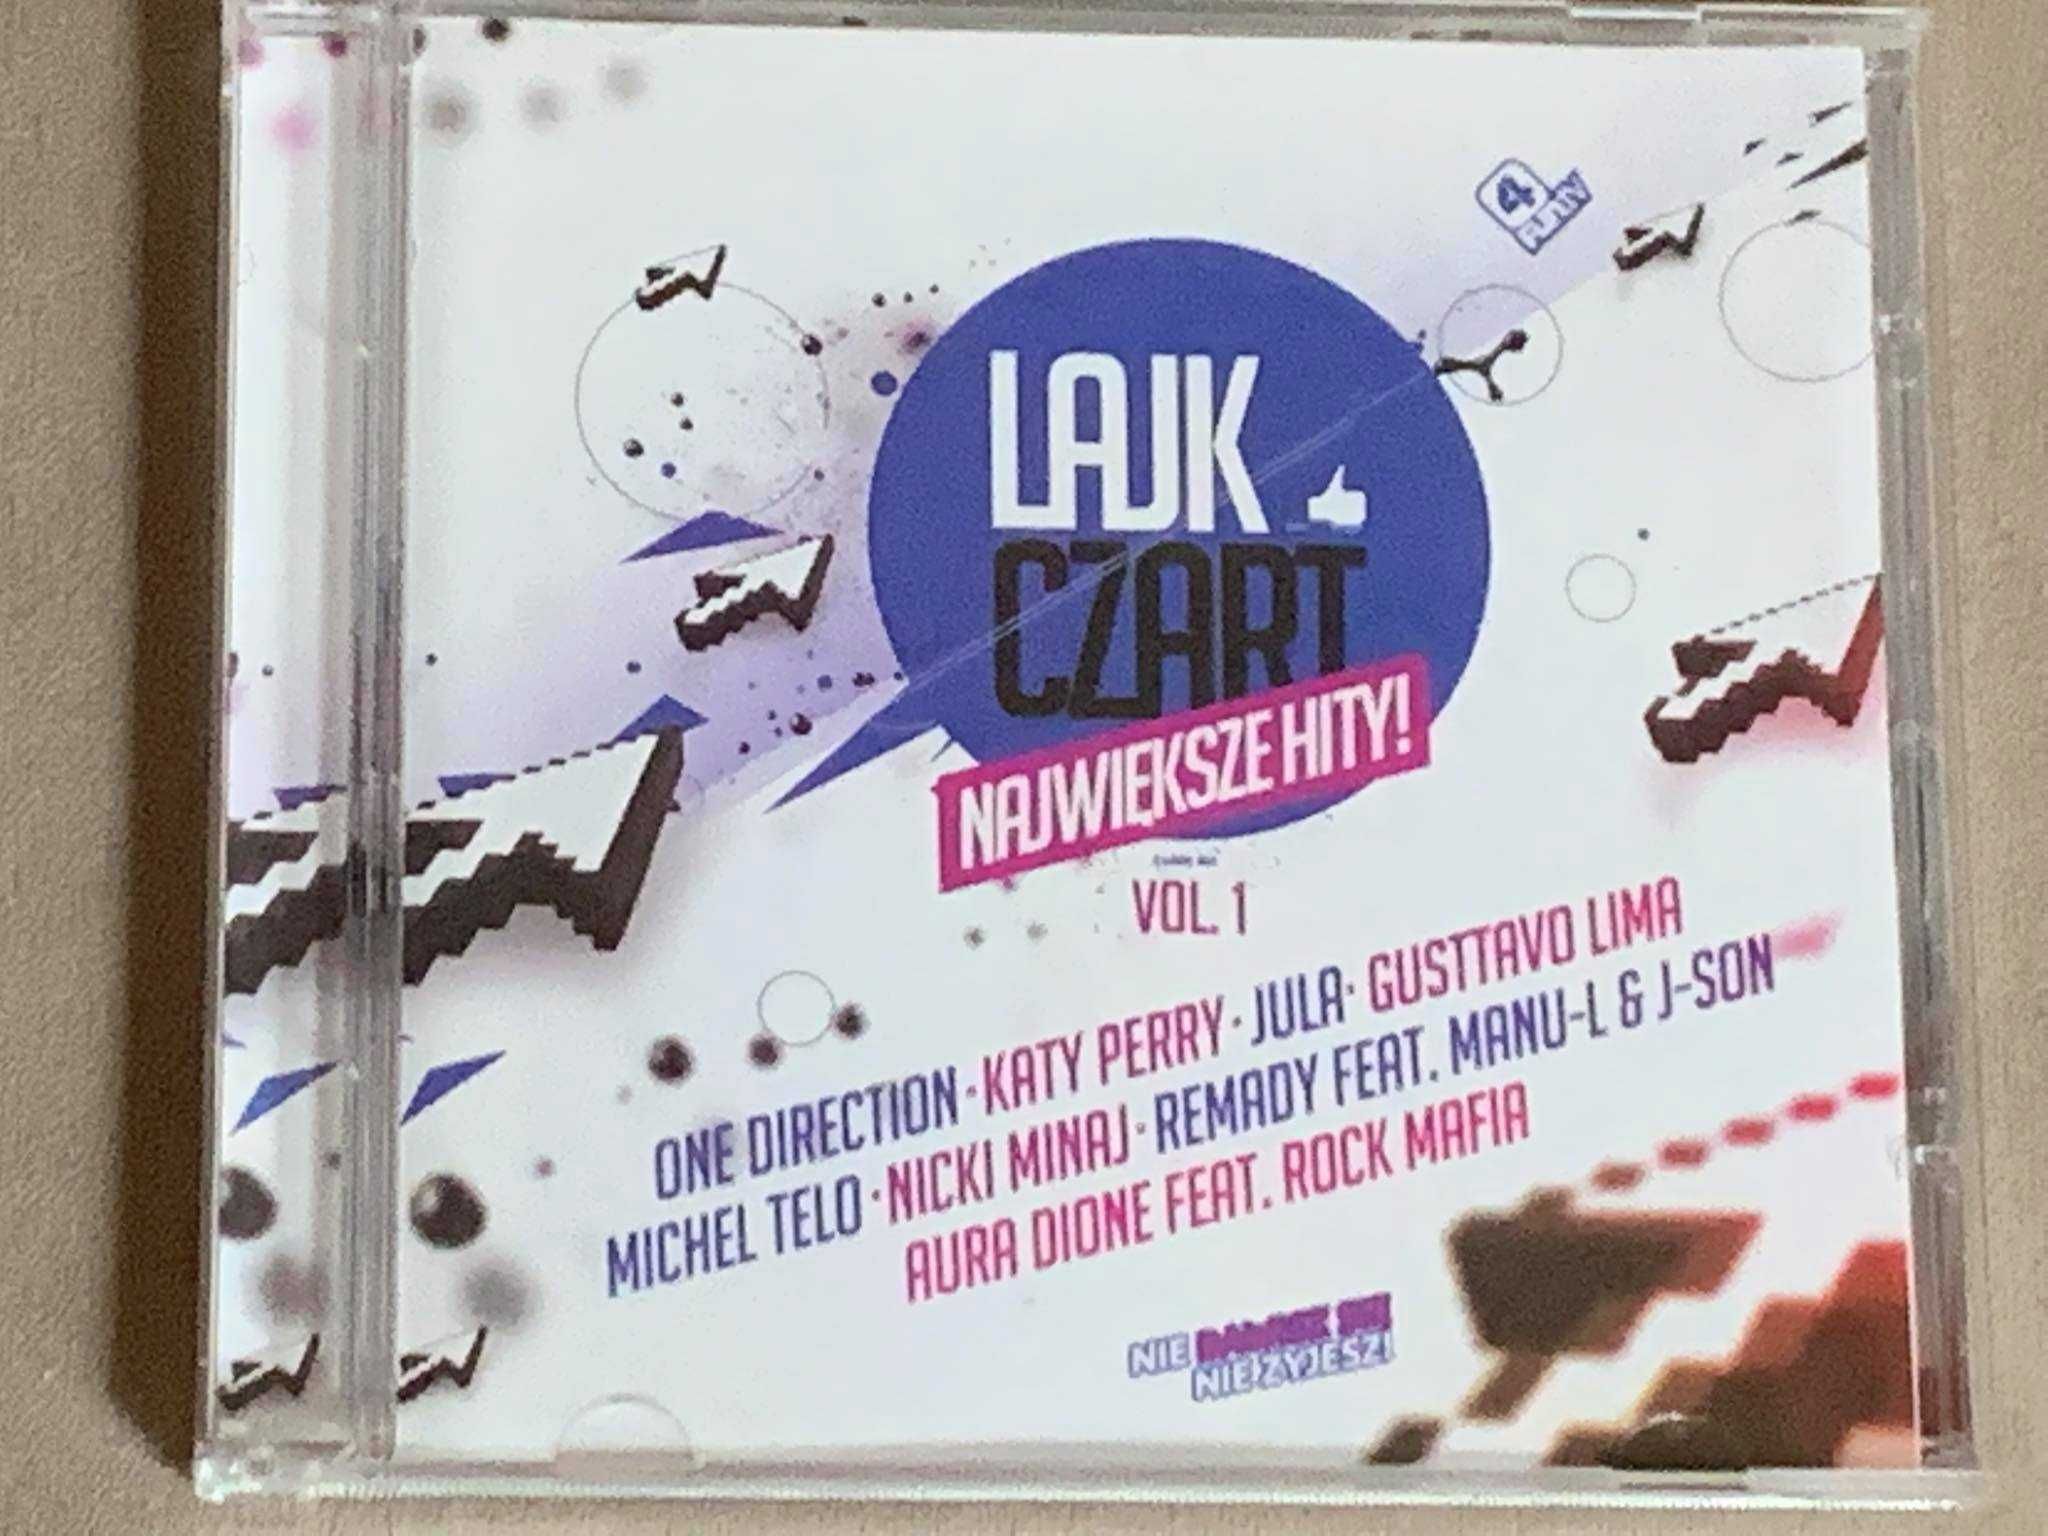 4 Fun Lajk Czart Vol.1 - CD (Gustavo Lima, Madonna, Jula) - stan EX!